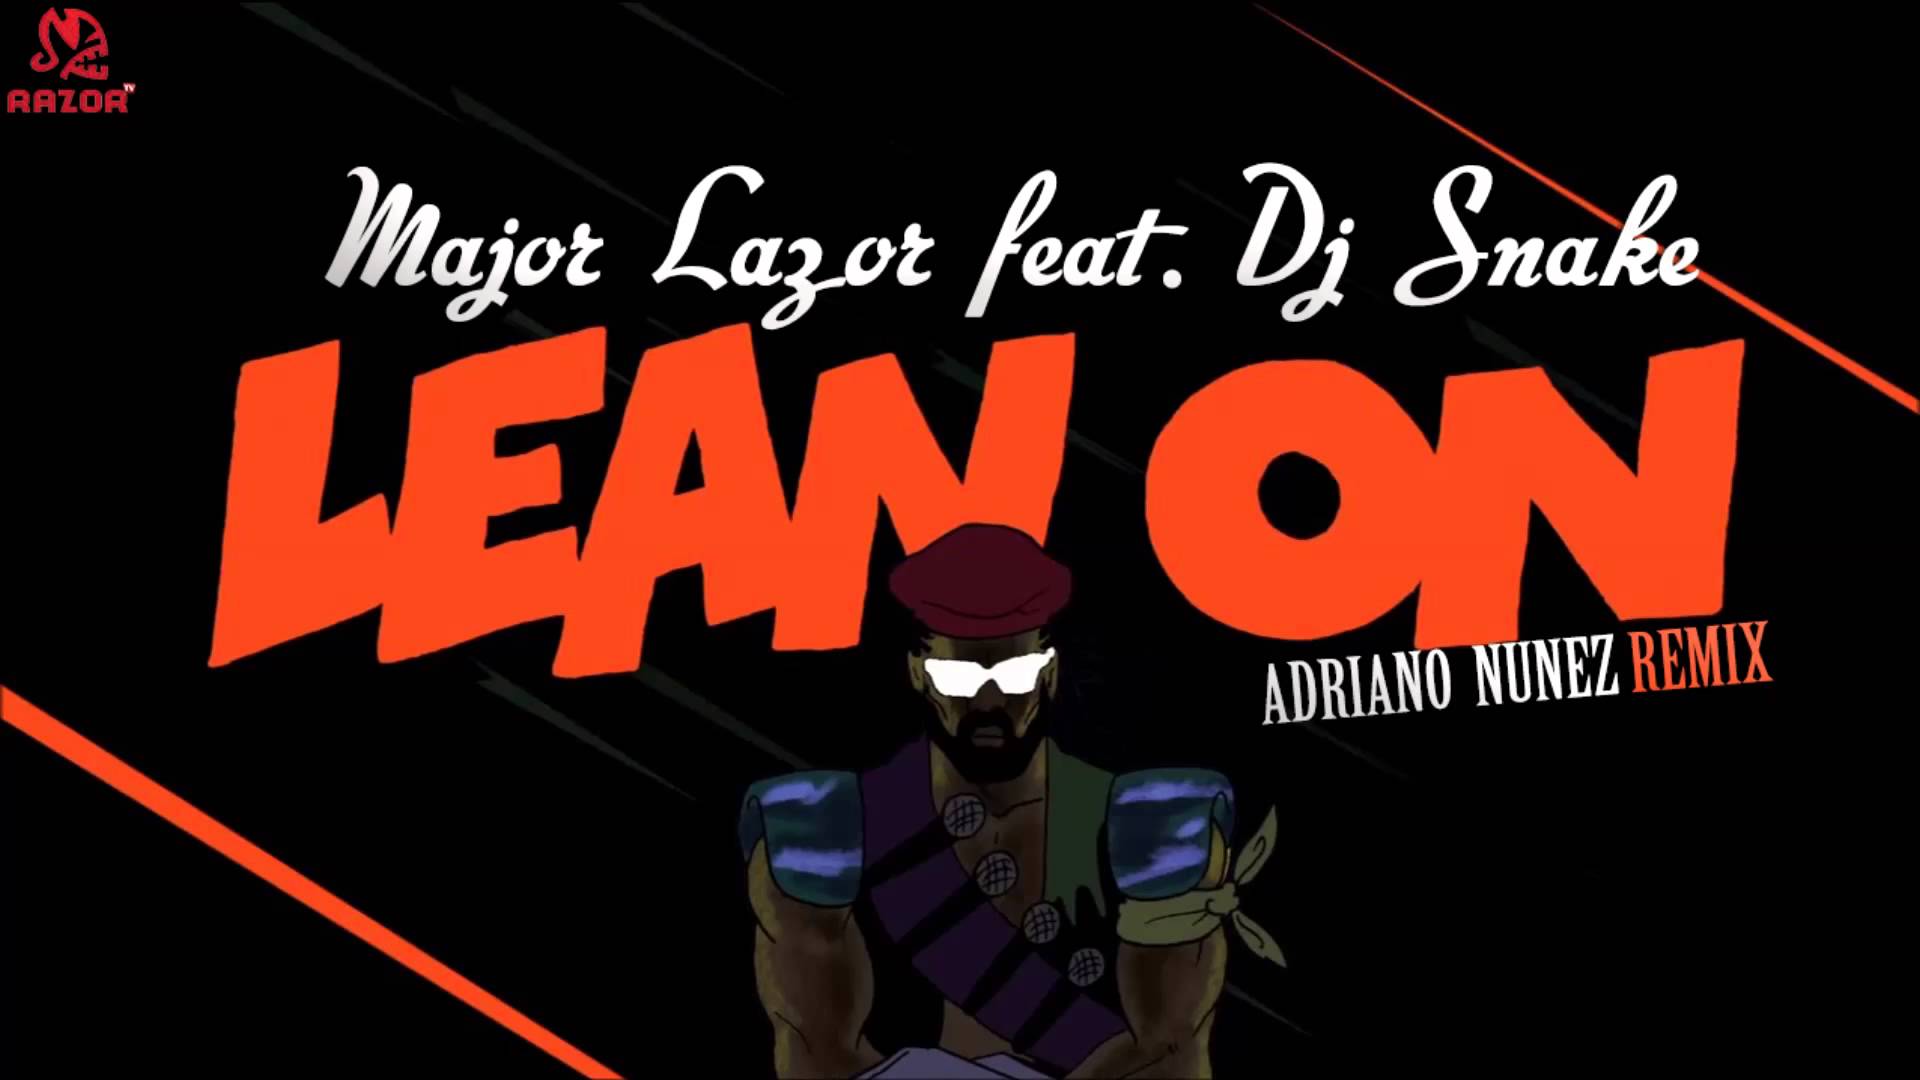 Major Lazer feat. Dj Snake On (Adriano Nunez Remix)